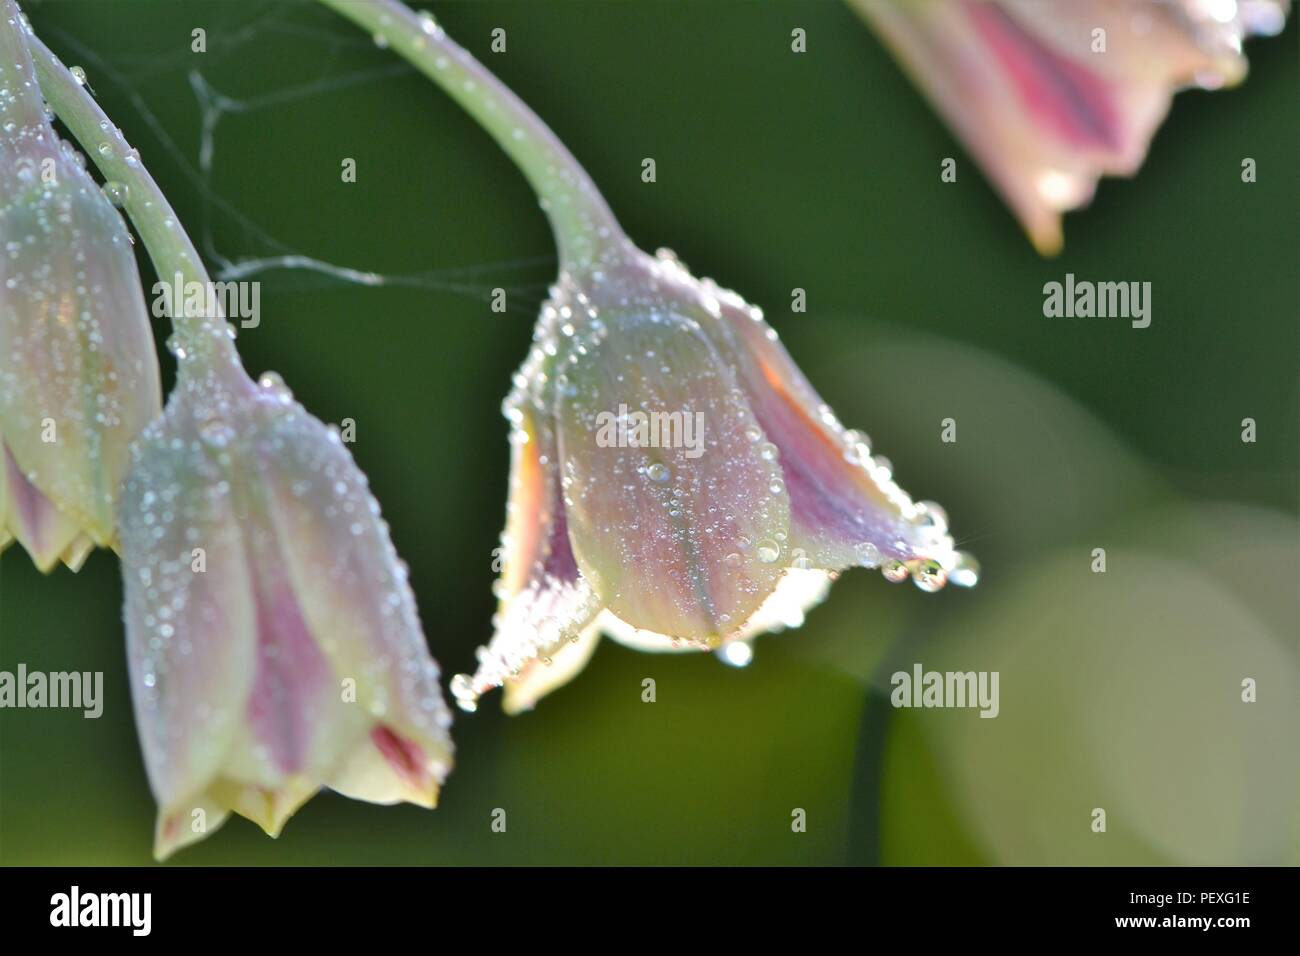 Allium siculum - tautropfen (close-up) Stockfoto